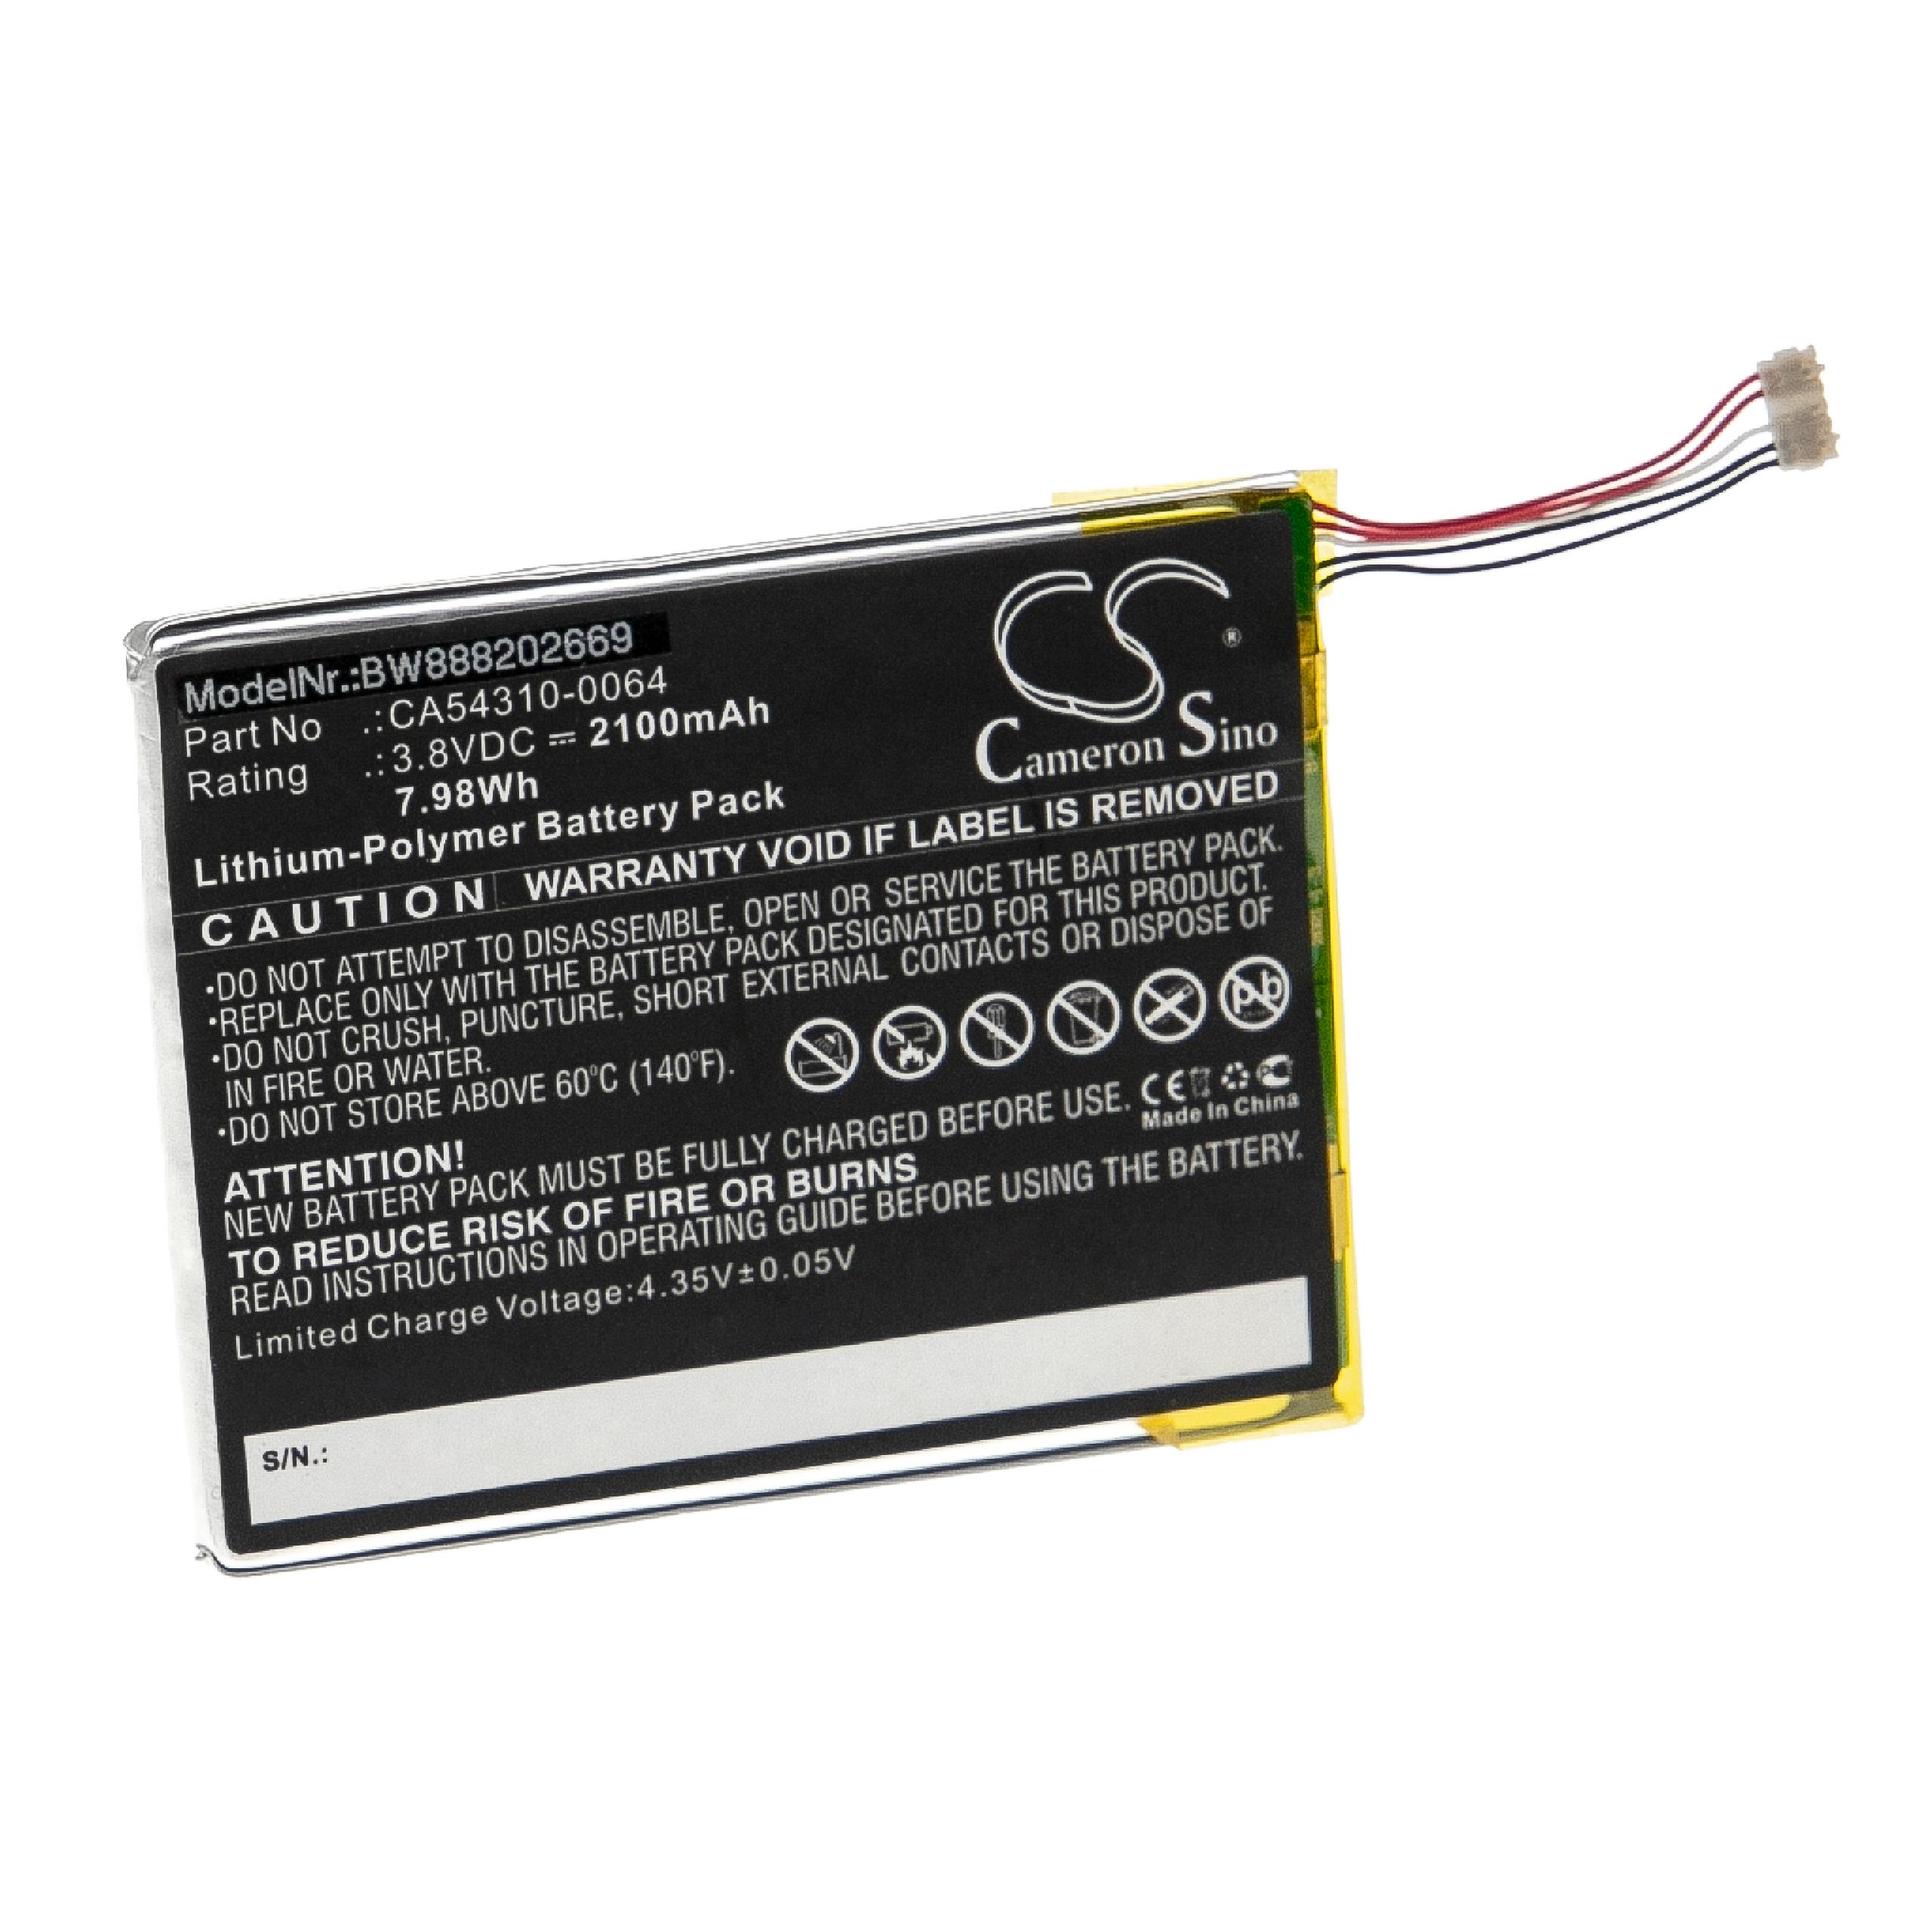 Batterie remplace Fujitsu CA54310-0064 pour téléphone portable - 2100mAh, 3,8V, Li-polymère